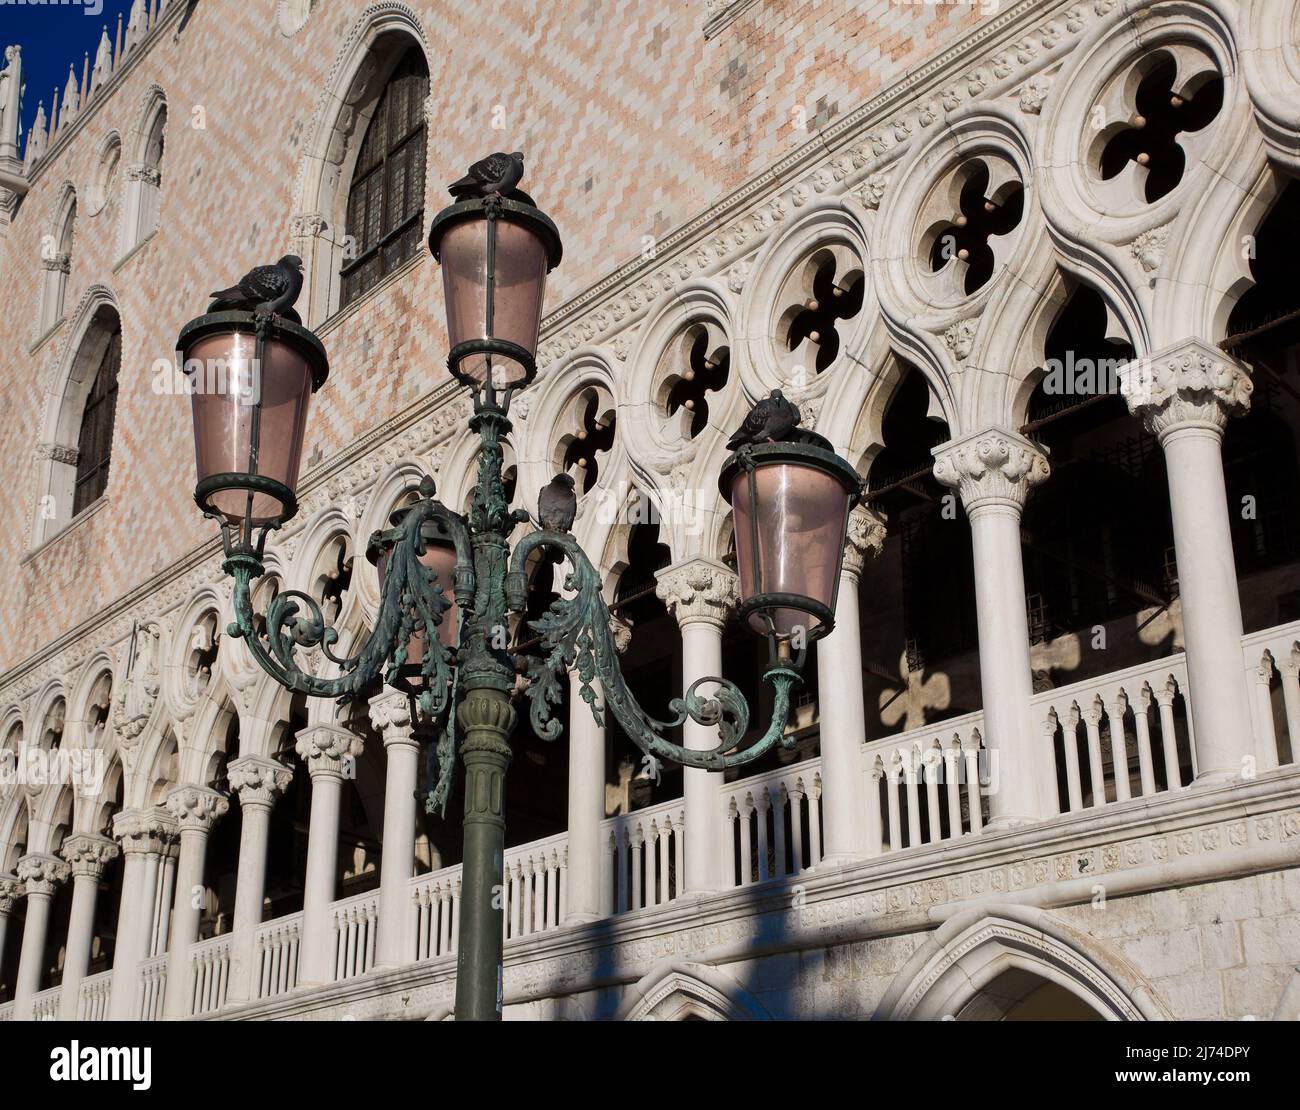 Italien Venedig Dogenpalast -498 Westfassade 15 Jh mit der Loggia im Piano nobile strukturiert durch Kielbögen und Vierpässe im Vordergrund Kandelaber Stock Photo